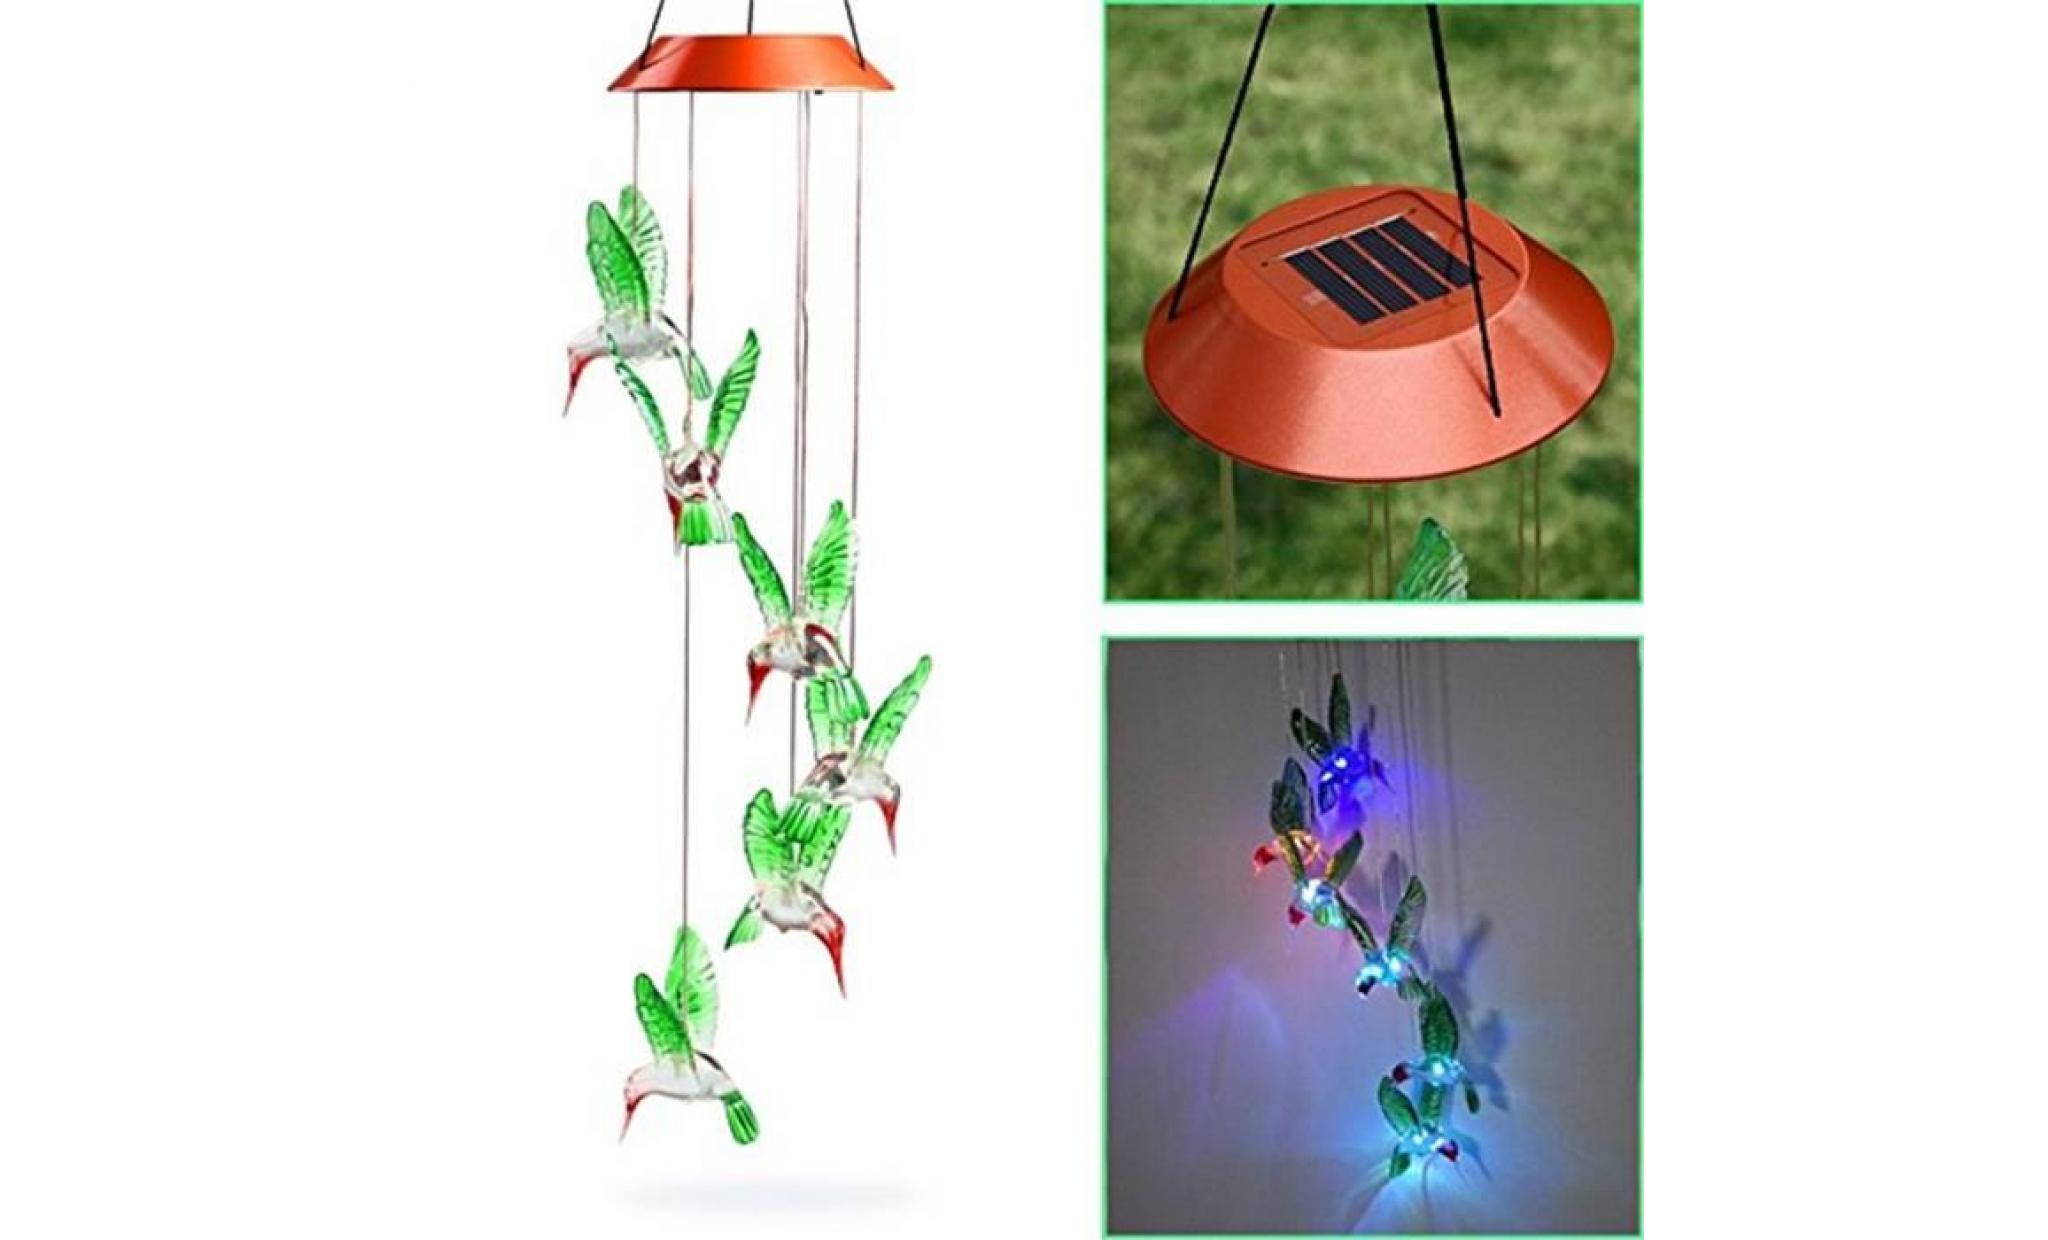 borne solaire vent changeant de colibri de vent solaire de carillon de vent de led pour l'éclairage de jardinage #si 225